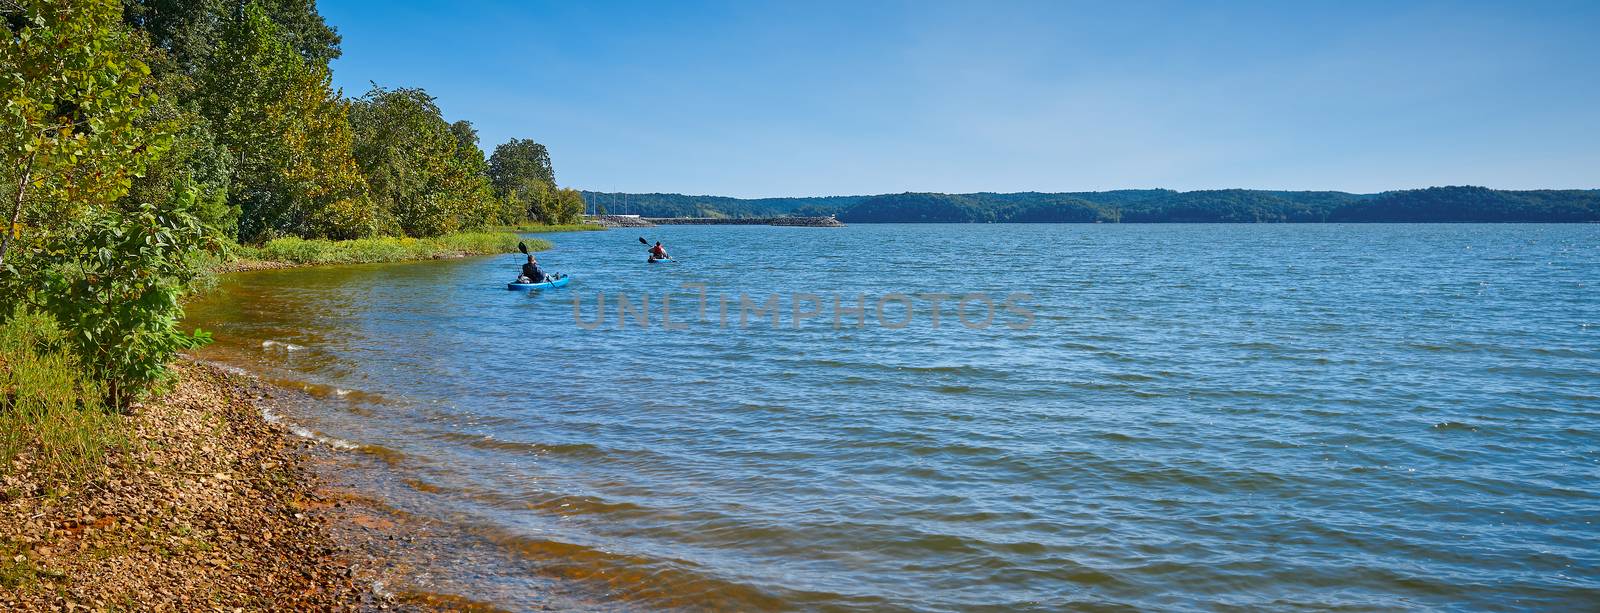 Kayakers on Kentucky Lake near Kenlake State Resort Park, Kentucky.